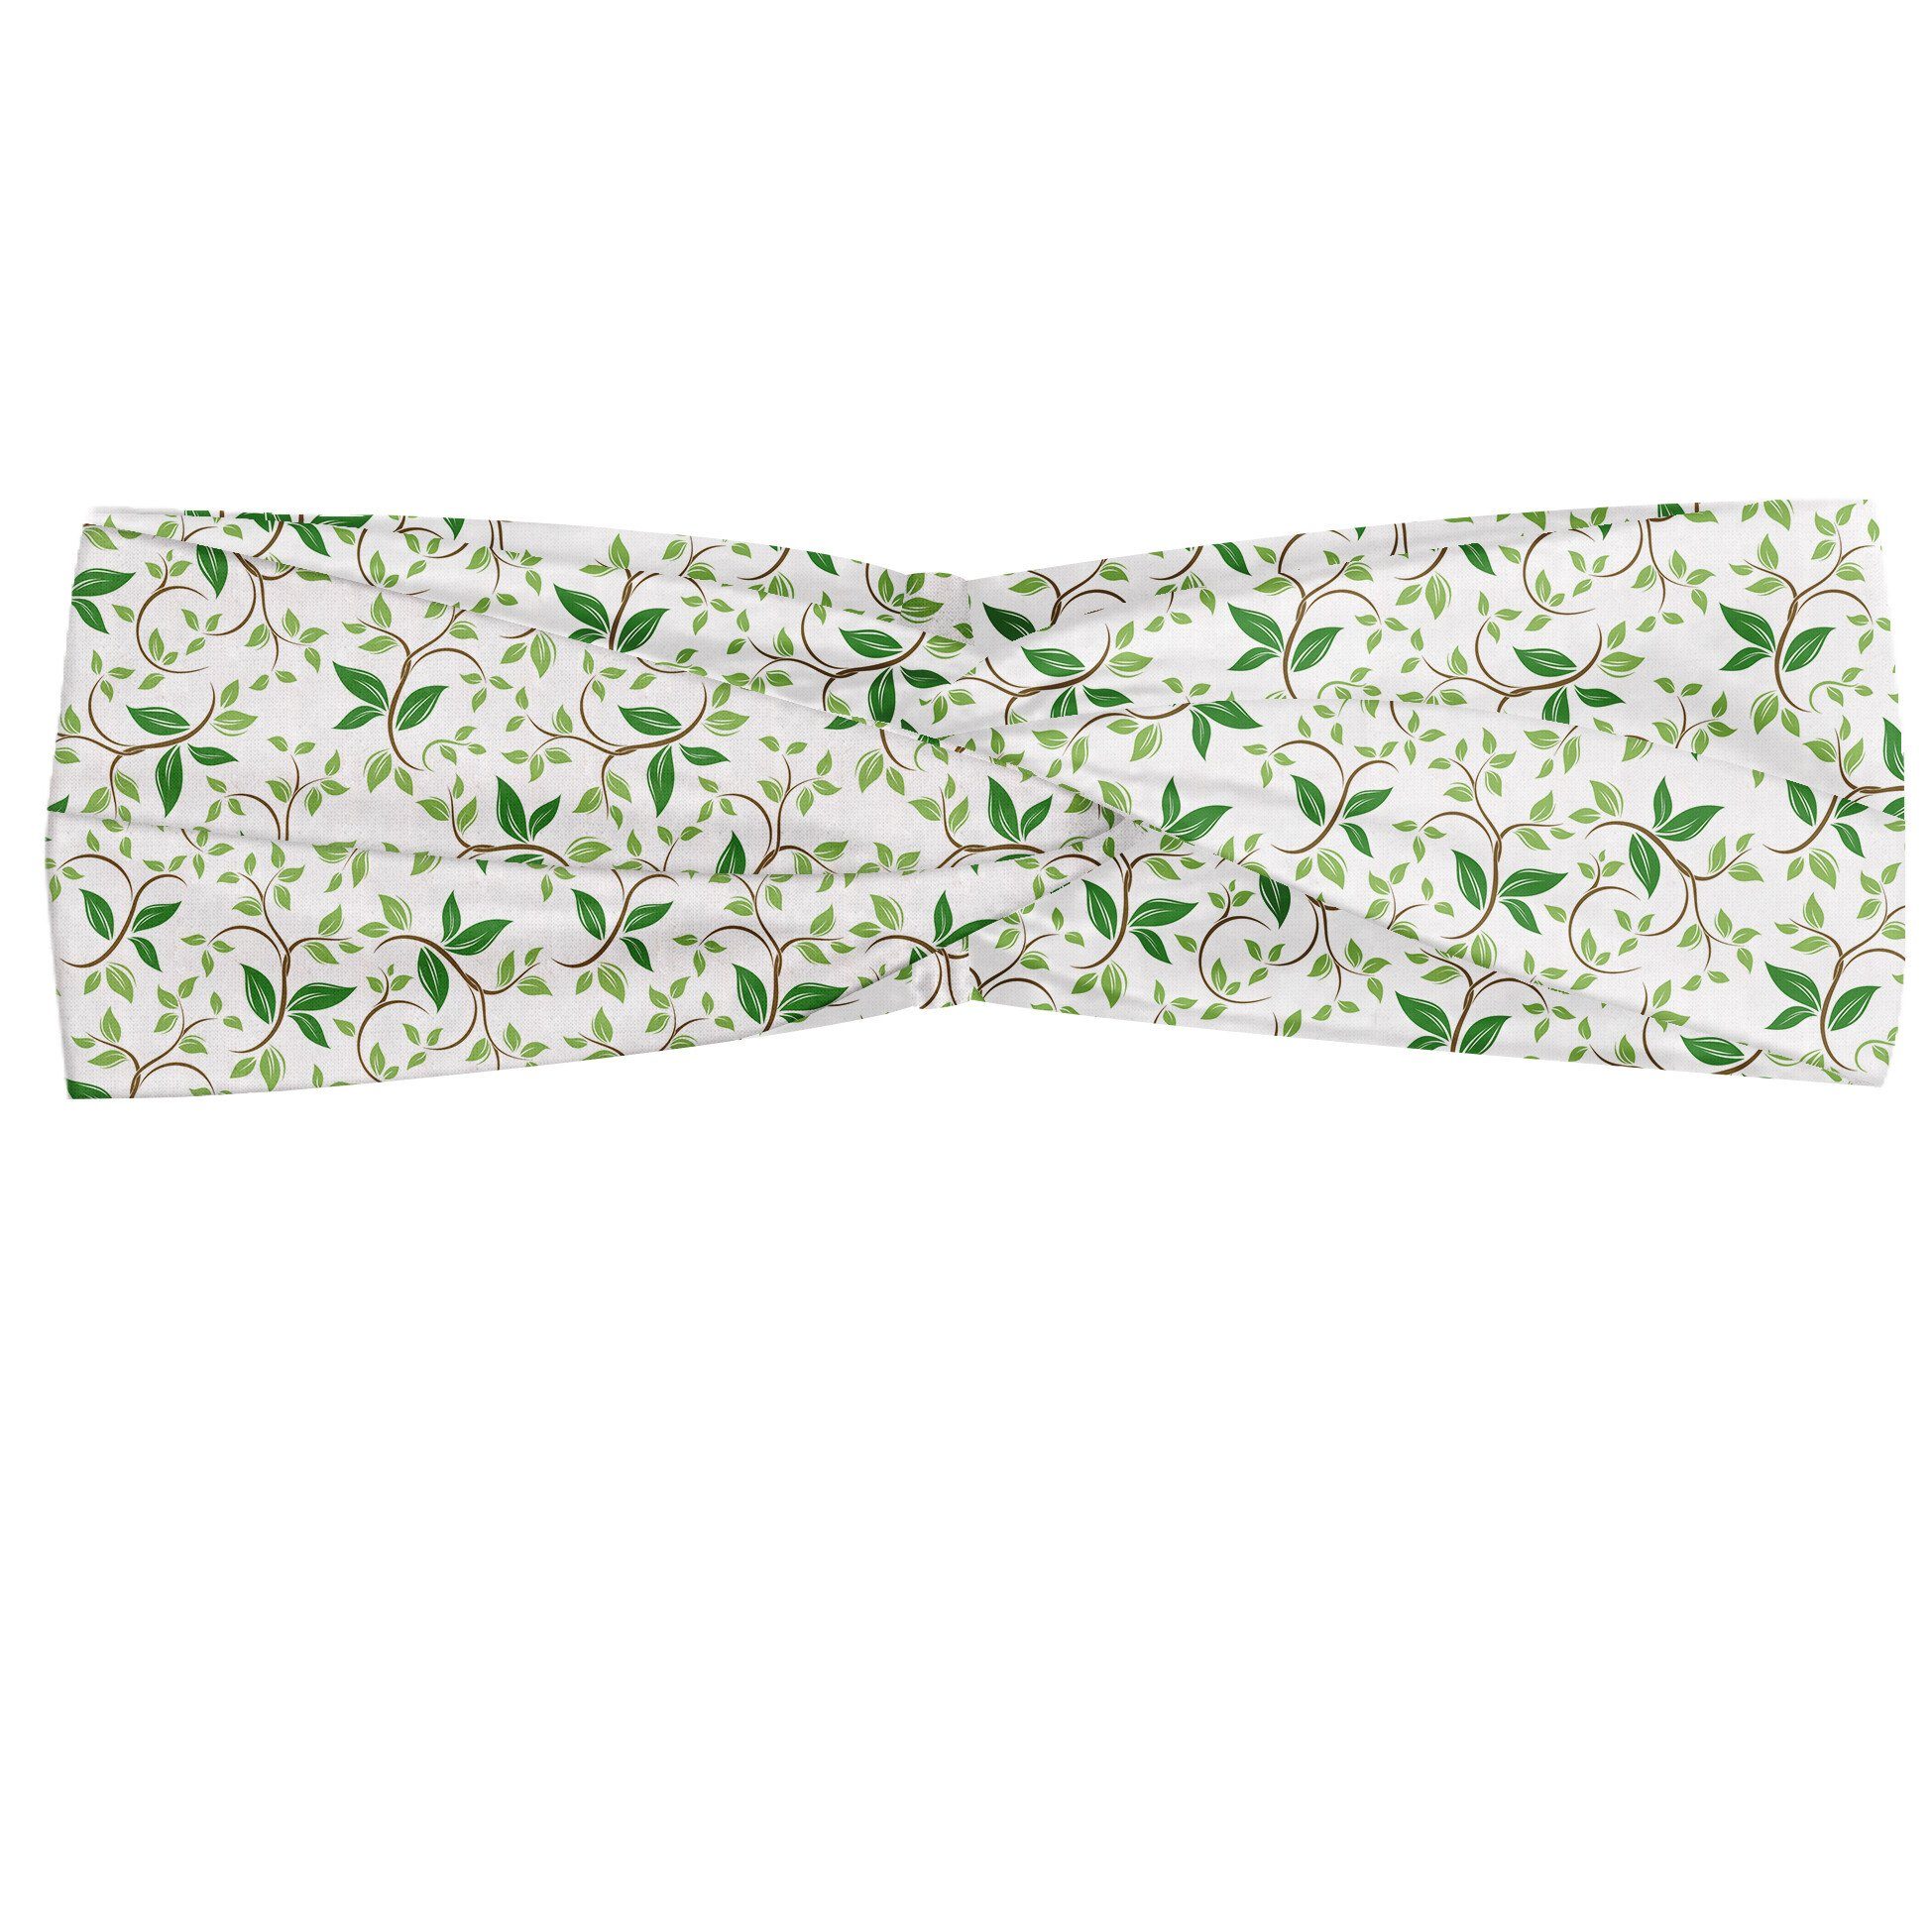 Abakuhaus Stirnband Elastisch und Angenehme alltags accessories Natur Ivy Green Leaves